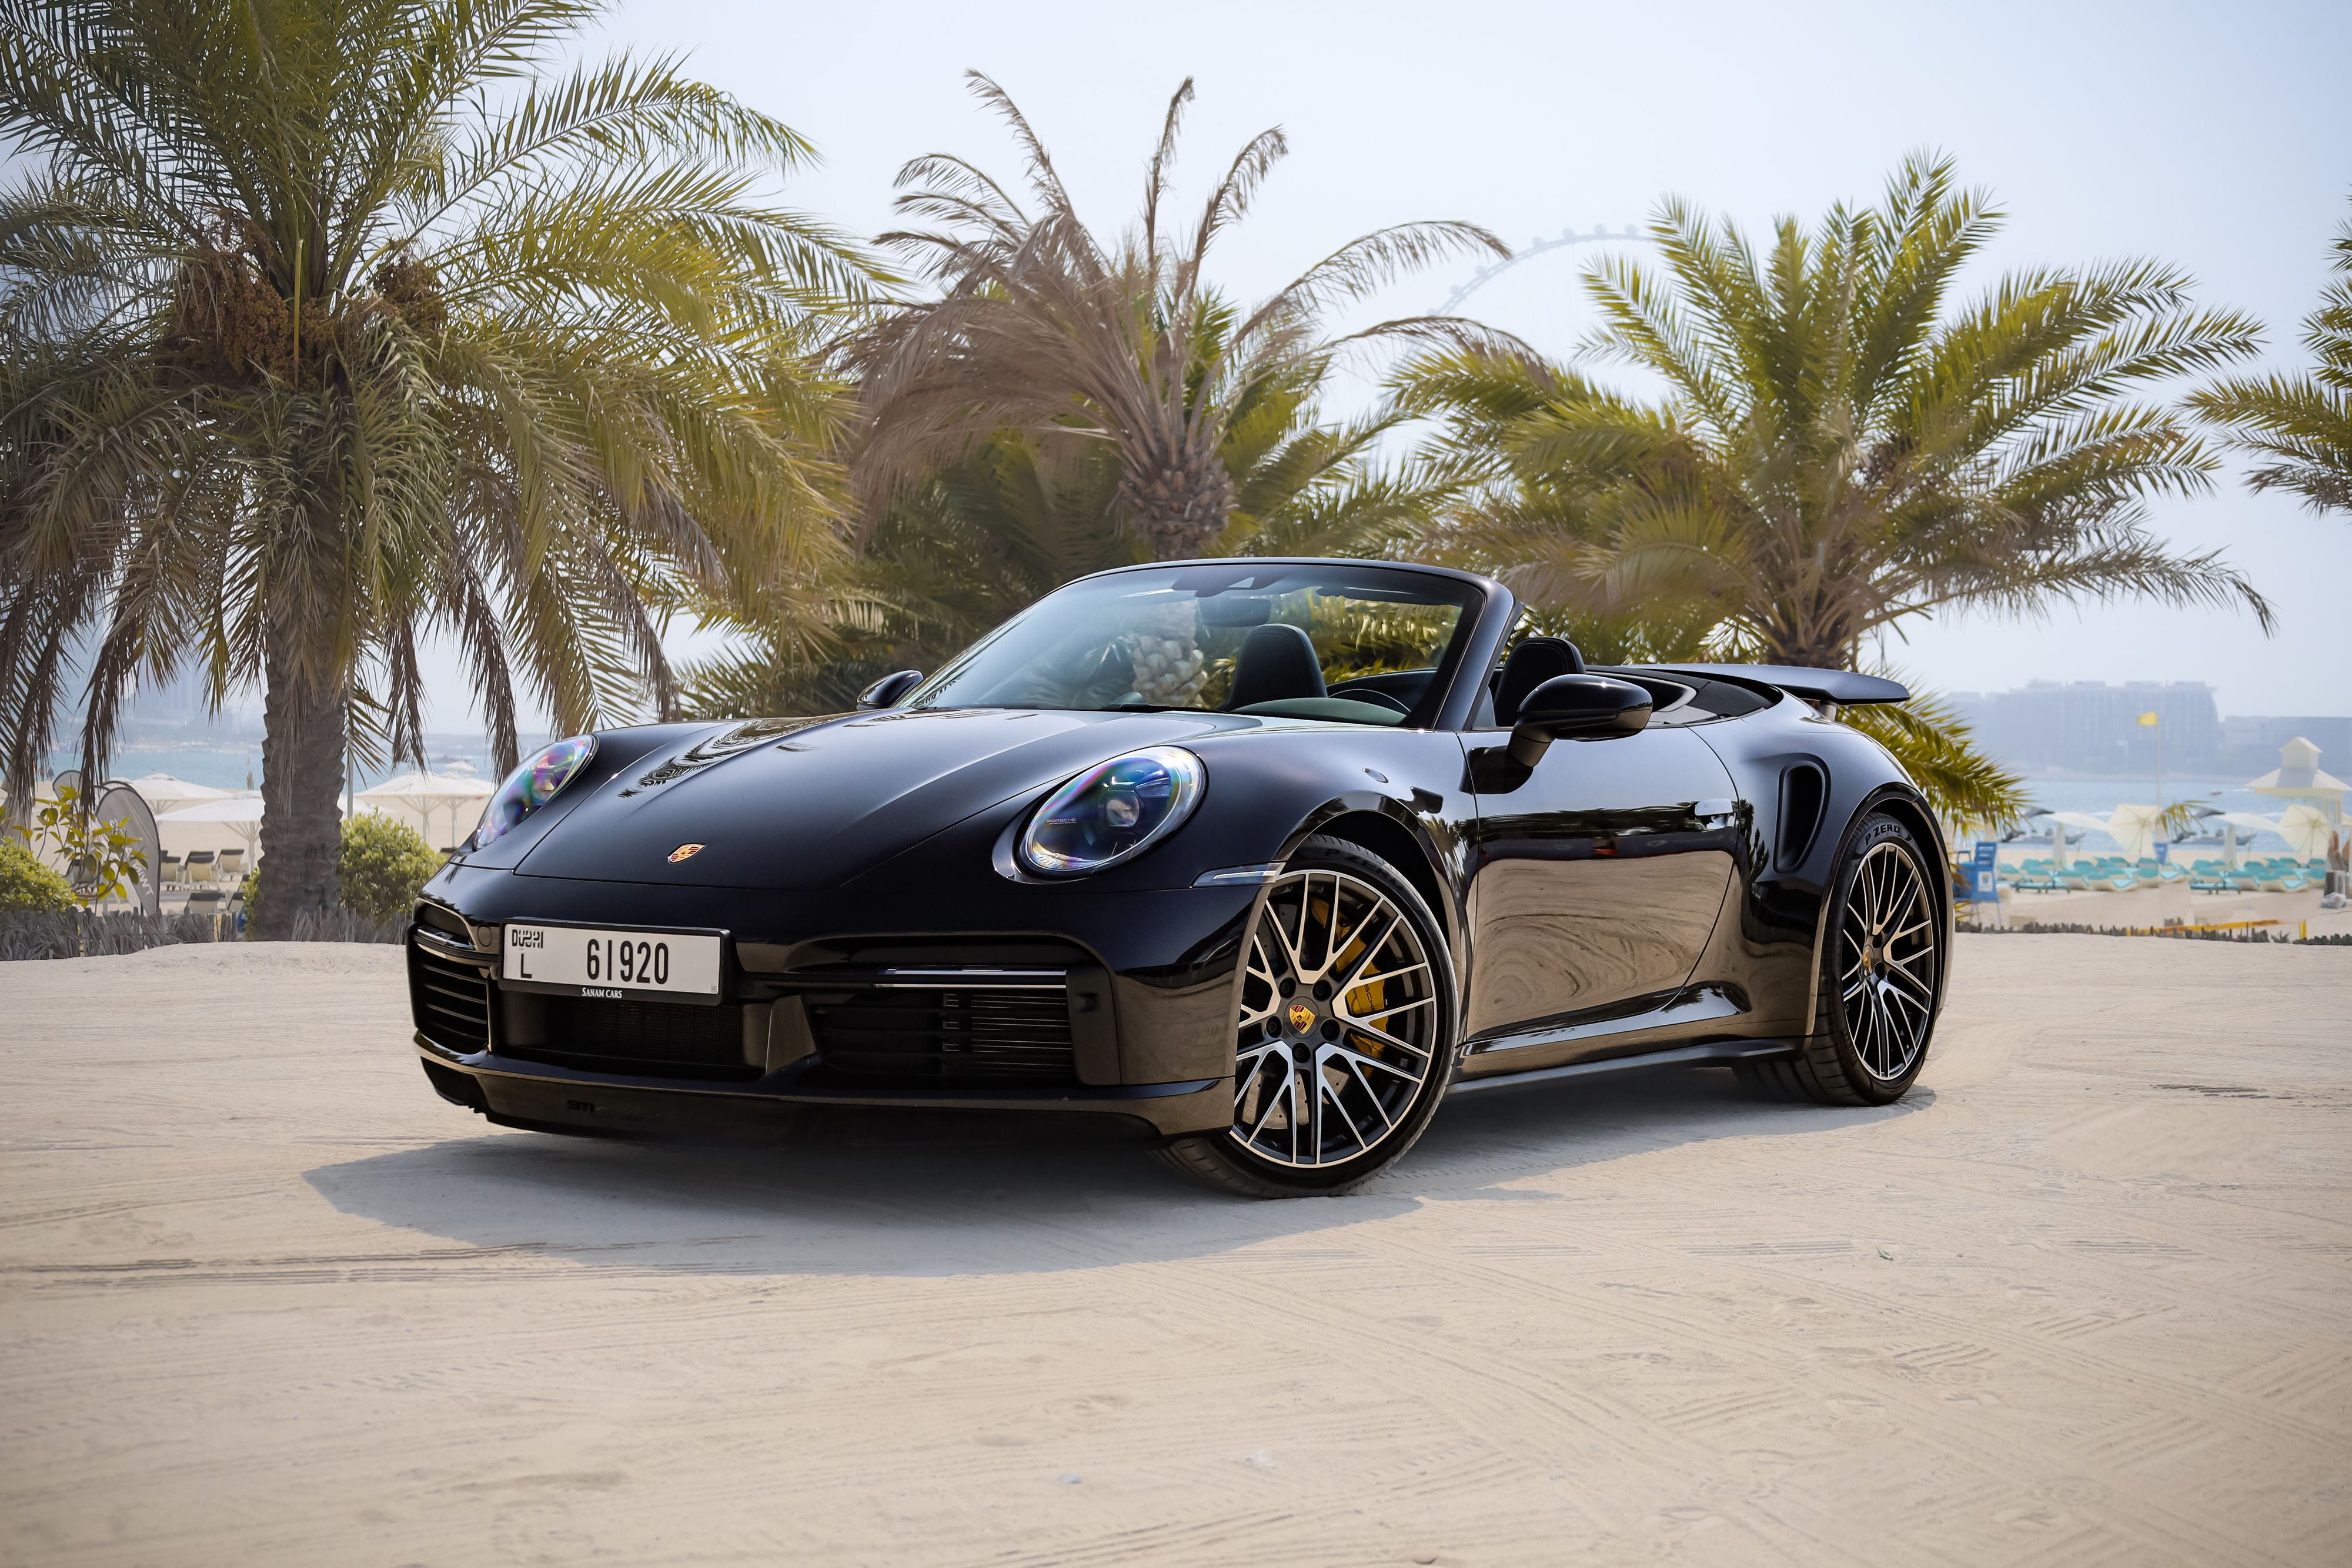 Dubai in style: Renting Porsche to explore the city